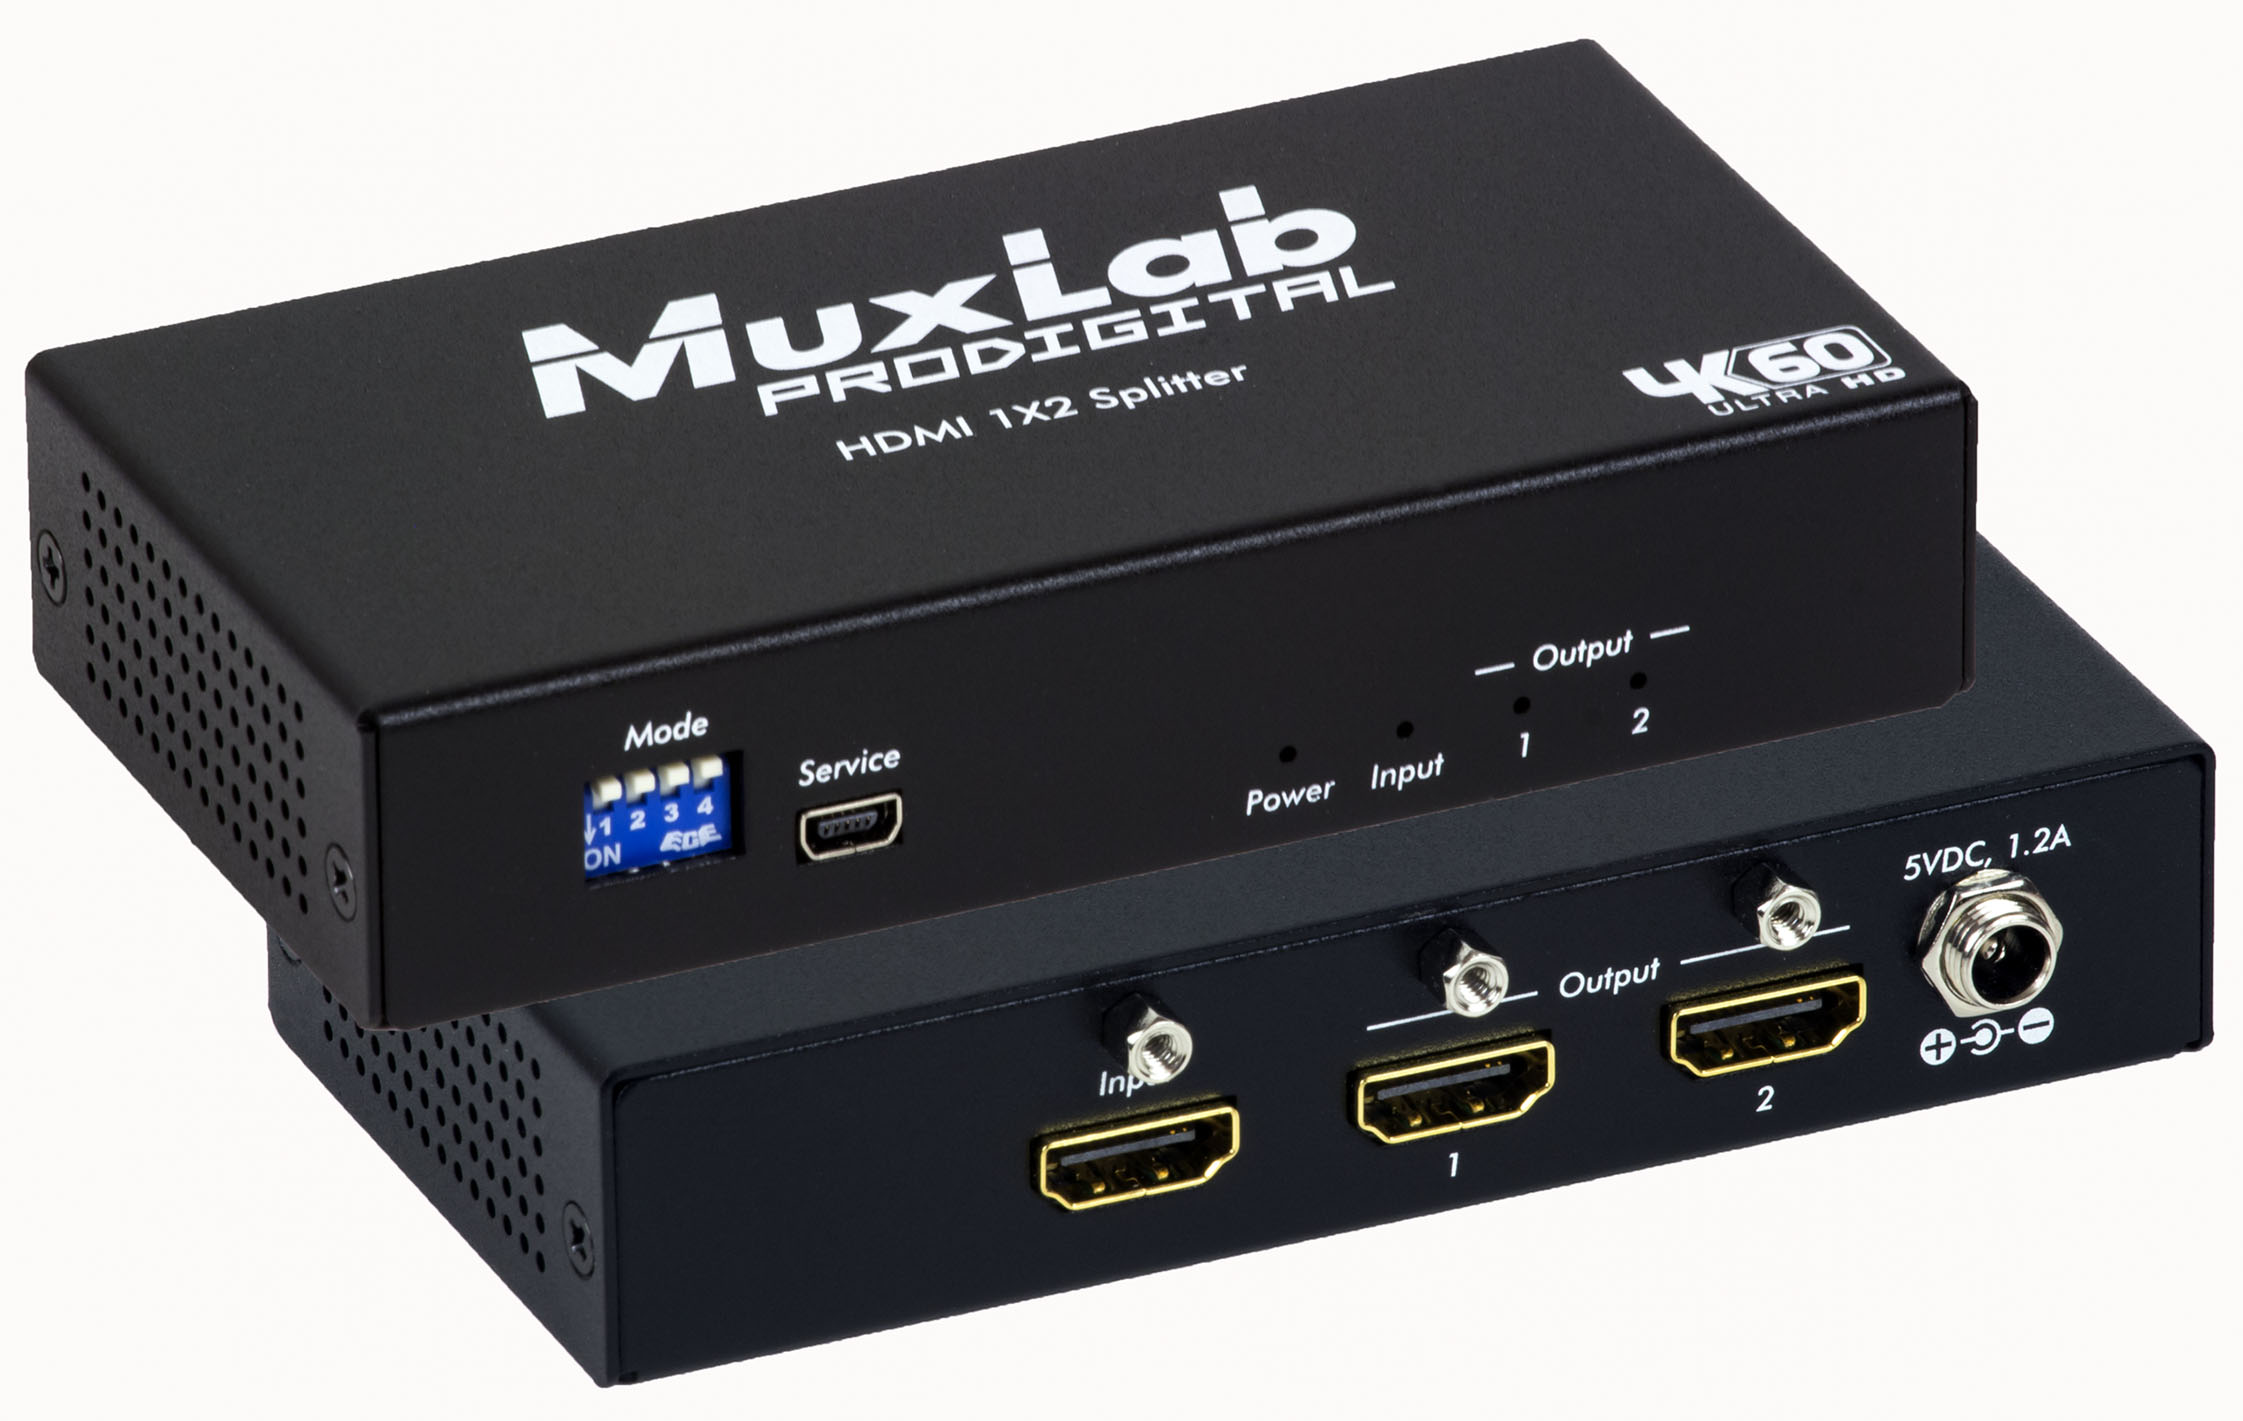 pop lighed St HDMI 1x2 Splitter, 4K60 - Muxlab